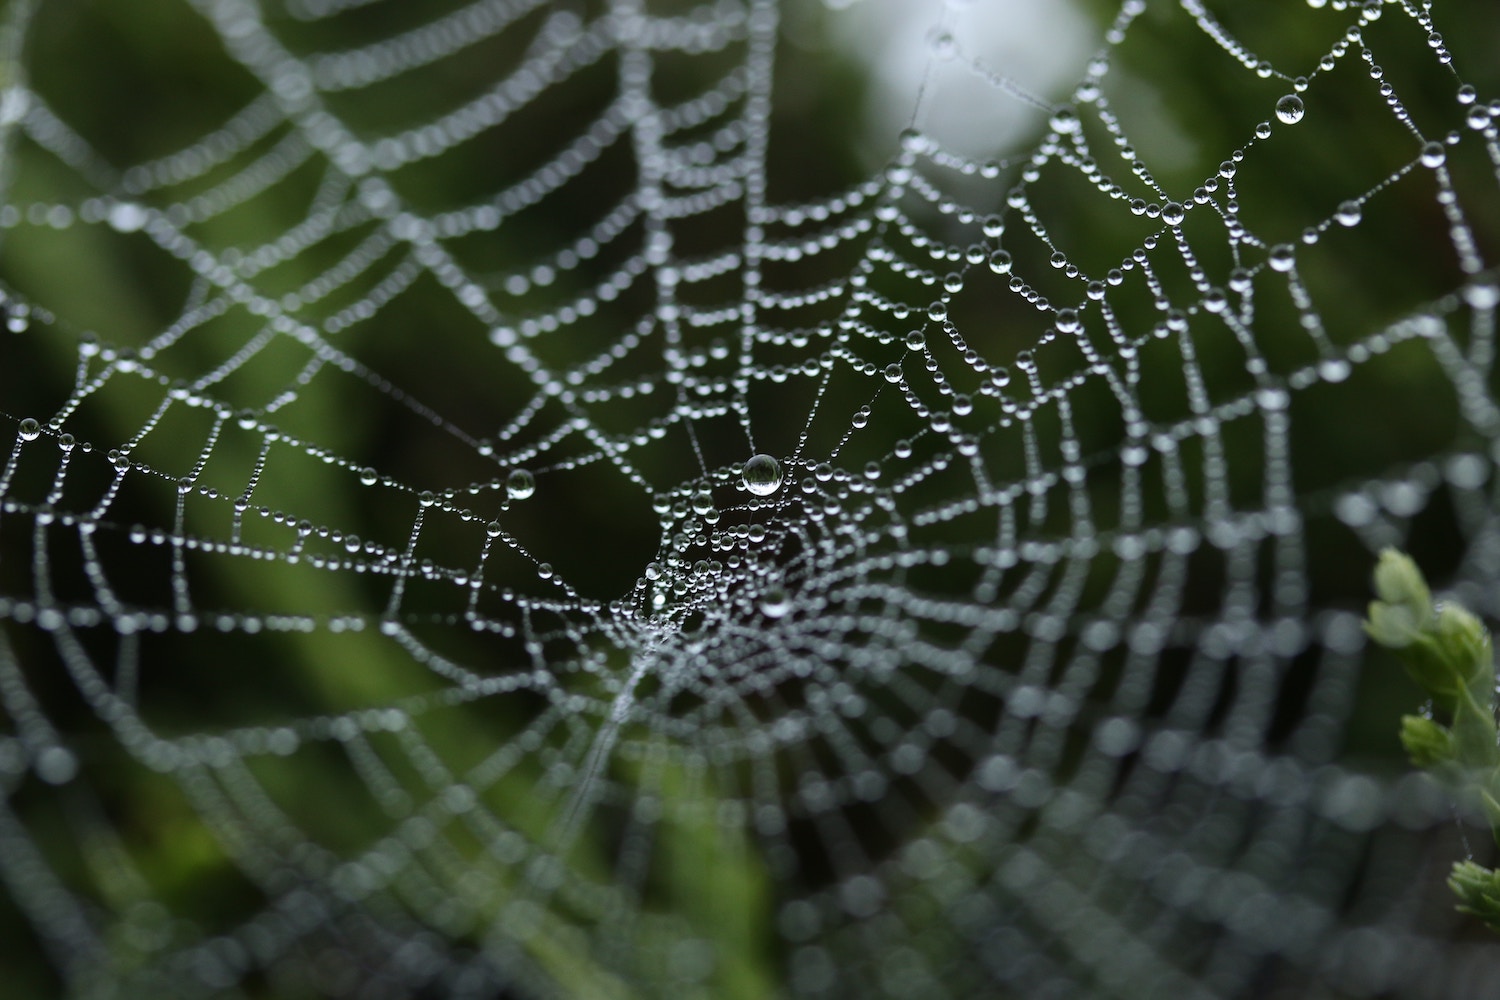 A dewy spider web